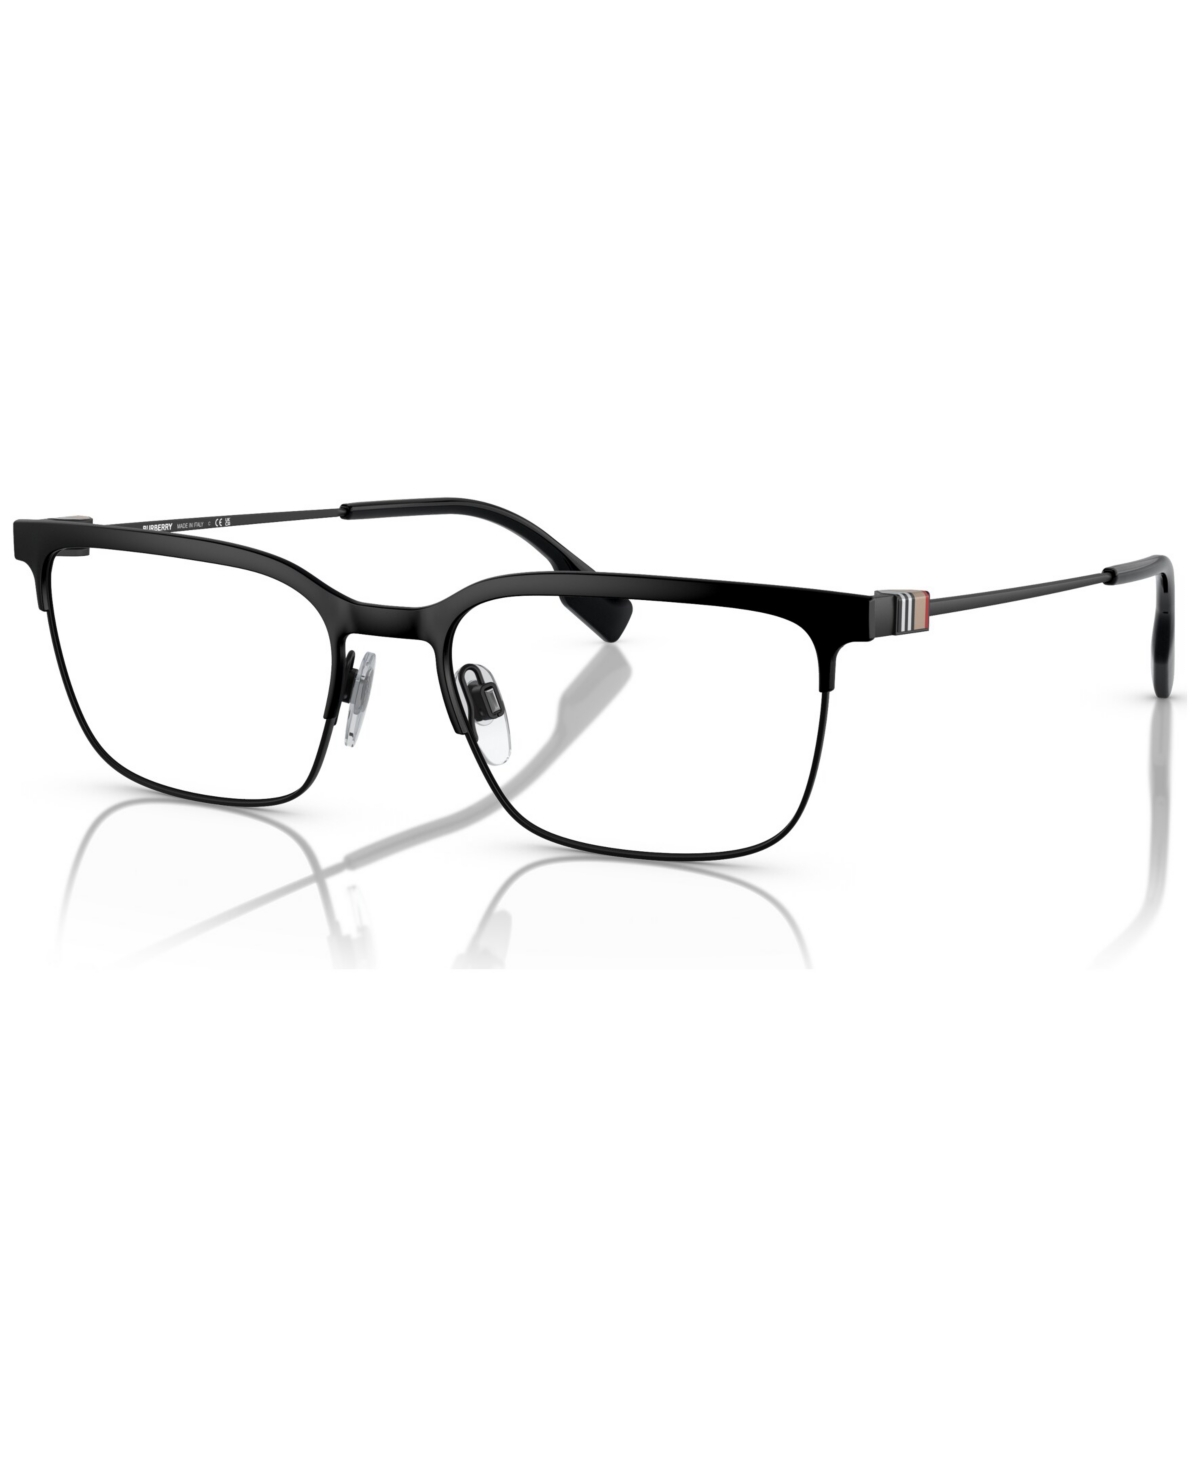 Men's Square Eyeglasses, BE1375 56 - Black